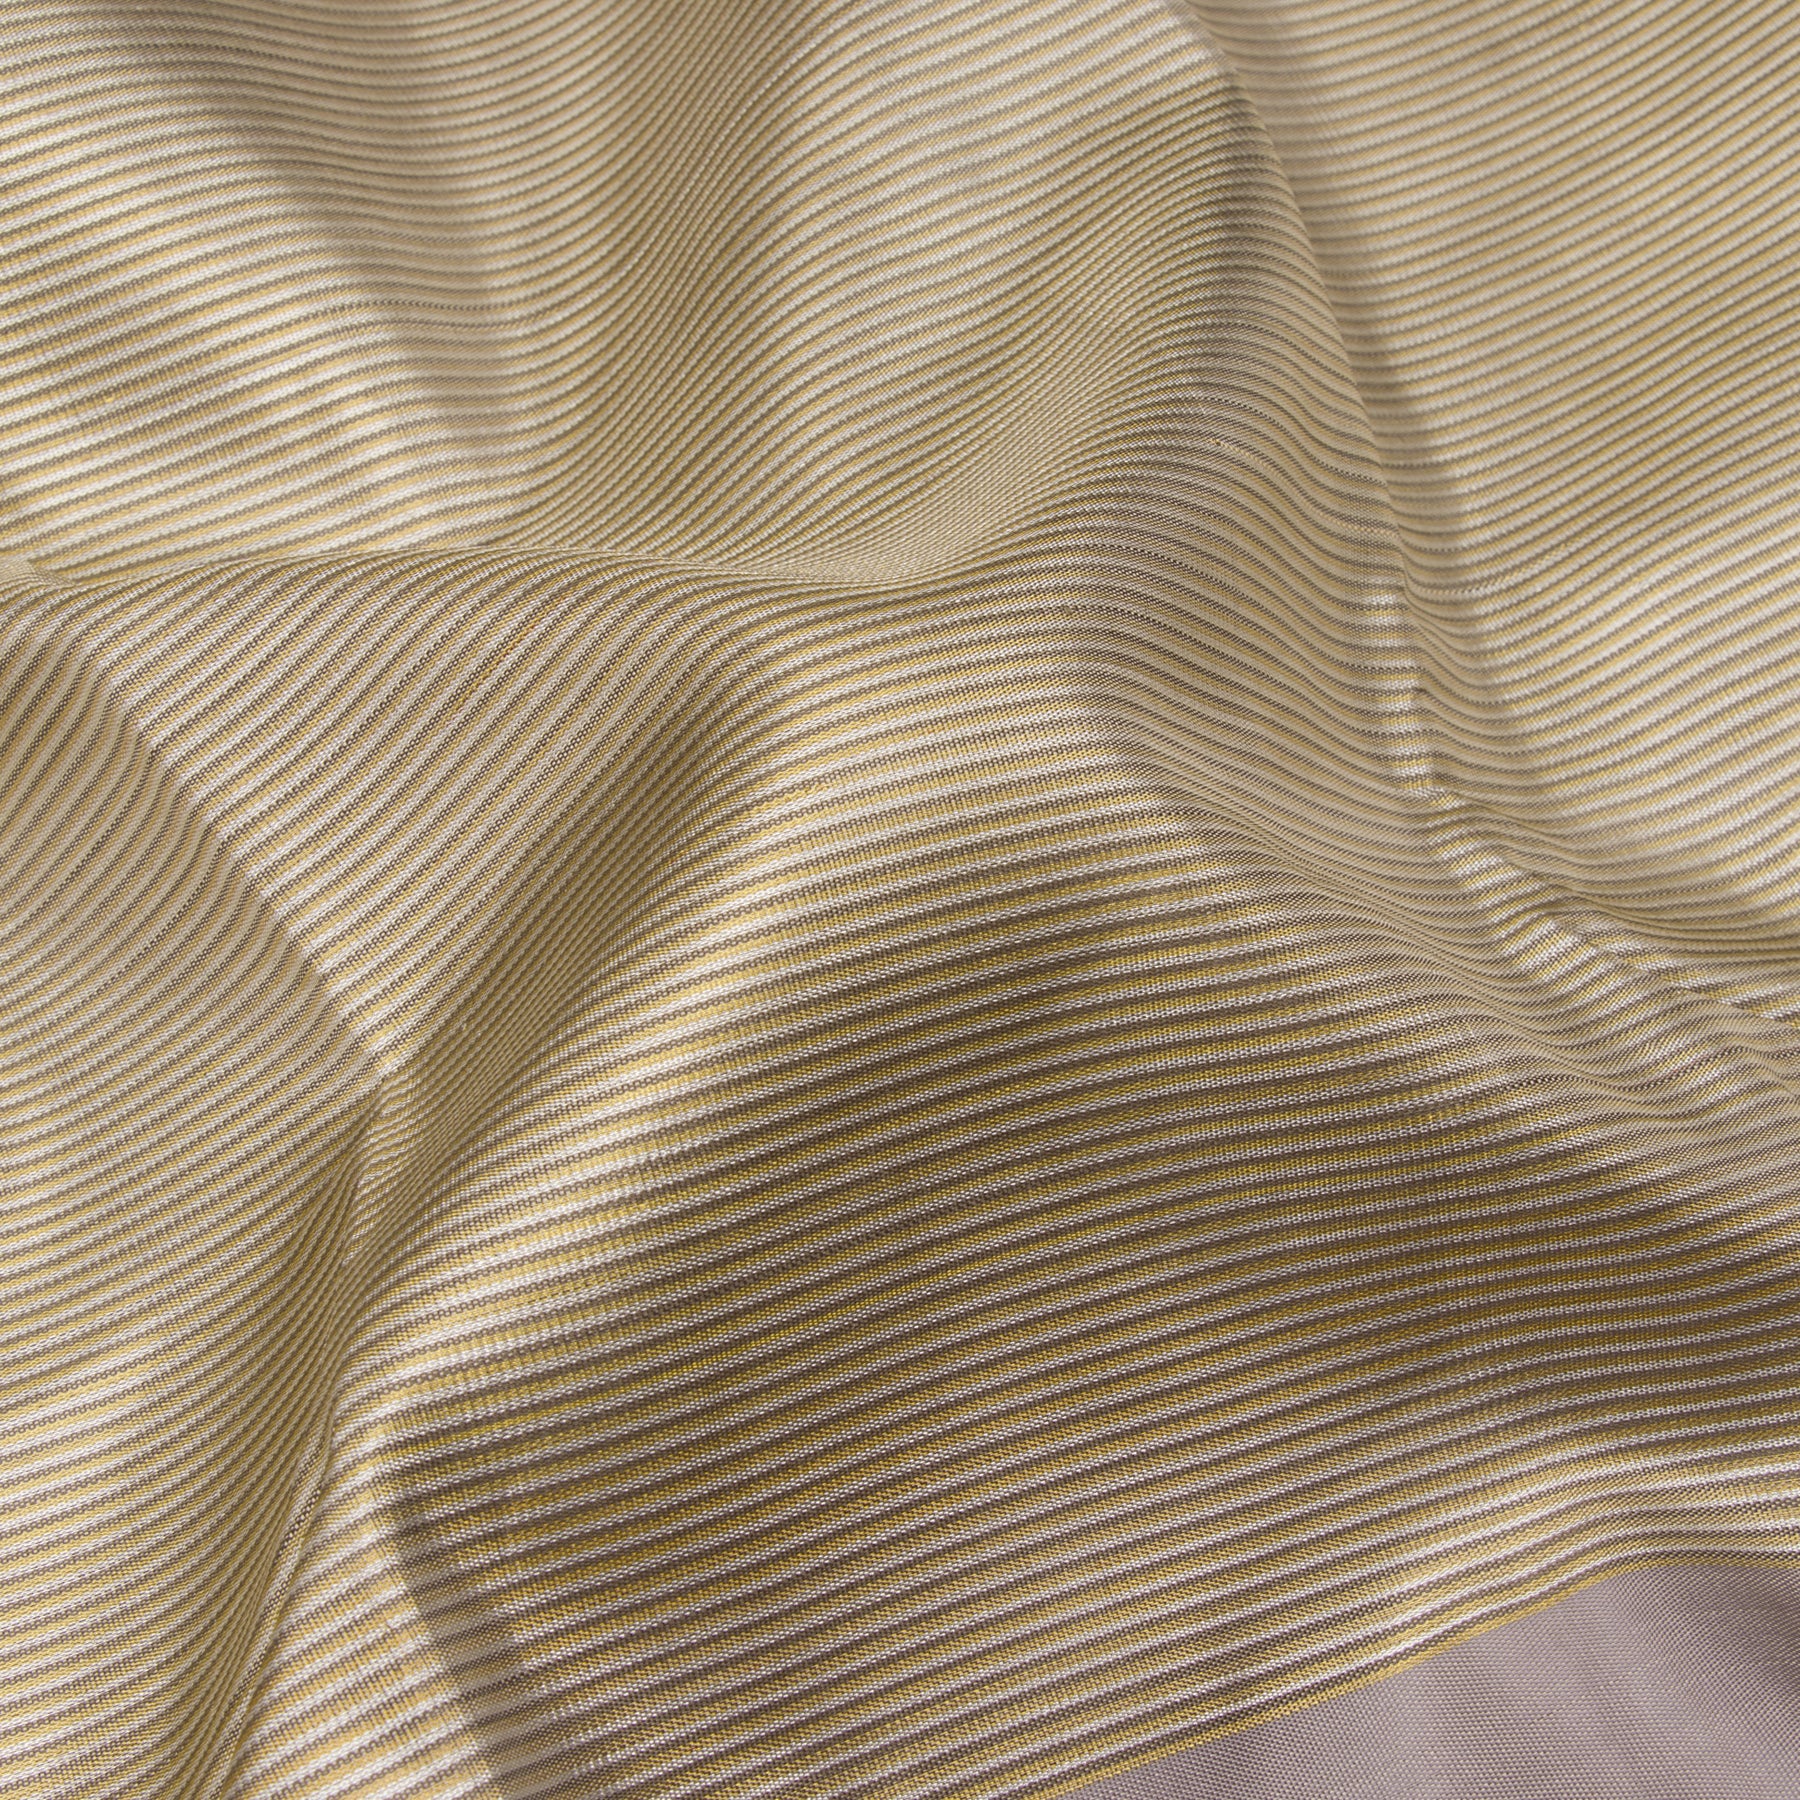 Kanakavalli Kanjivaram Silk Sari 23-041-HS001-11057 - Fabric View